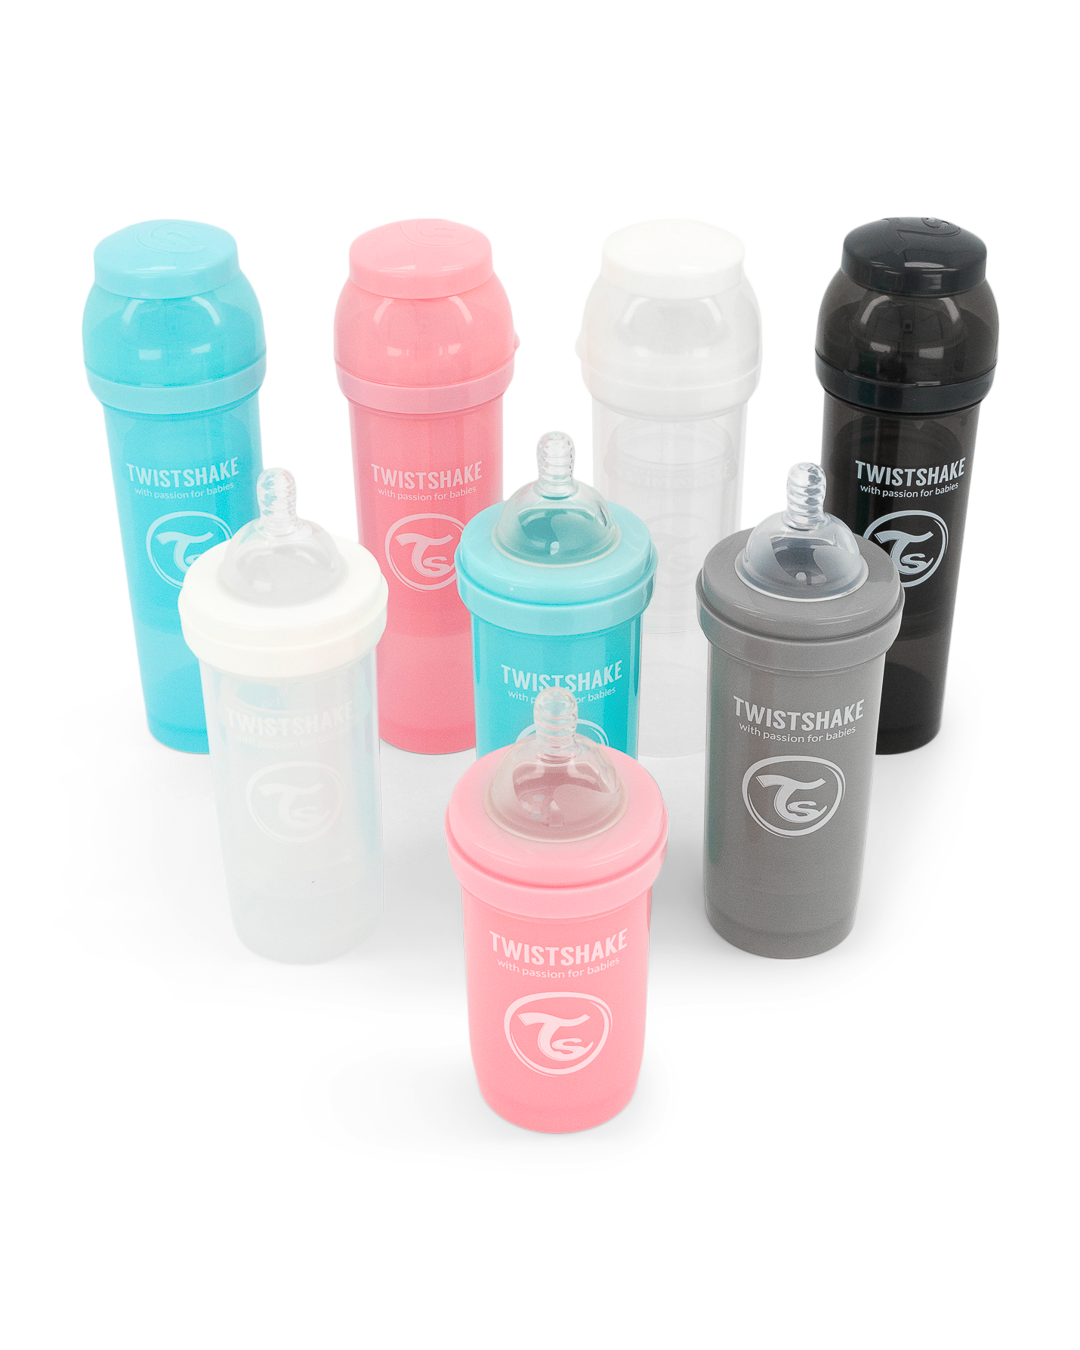 MamiStore - ✨Biberones Twistshake✨⠀⠀⠀⠀⠀⠀⠀⠀⠀ .⠀⠀⠀⠀⠀⠀⠀⠀⠀ ✓Cada botella  contiene un práctico contenedor de leche en polvo, así como una red de  mezcla.⠀⠀⠀⠀⠀⠀⠀⠀⠀ .⠀⠀⠀⠀⠀⠀⠀⠀⠀ ✓El sistema único llamado TwistFlow previene